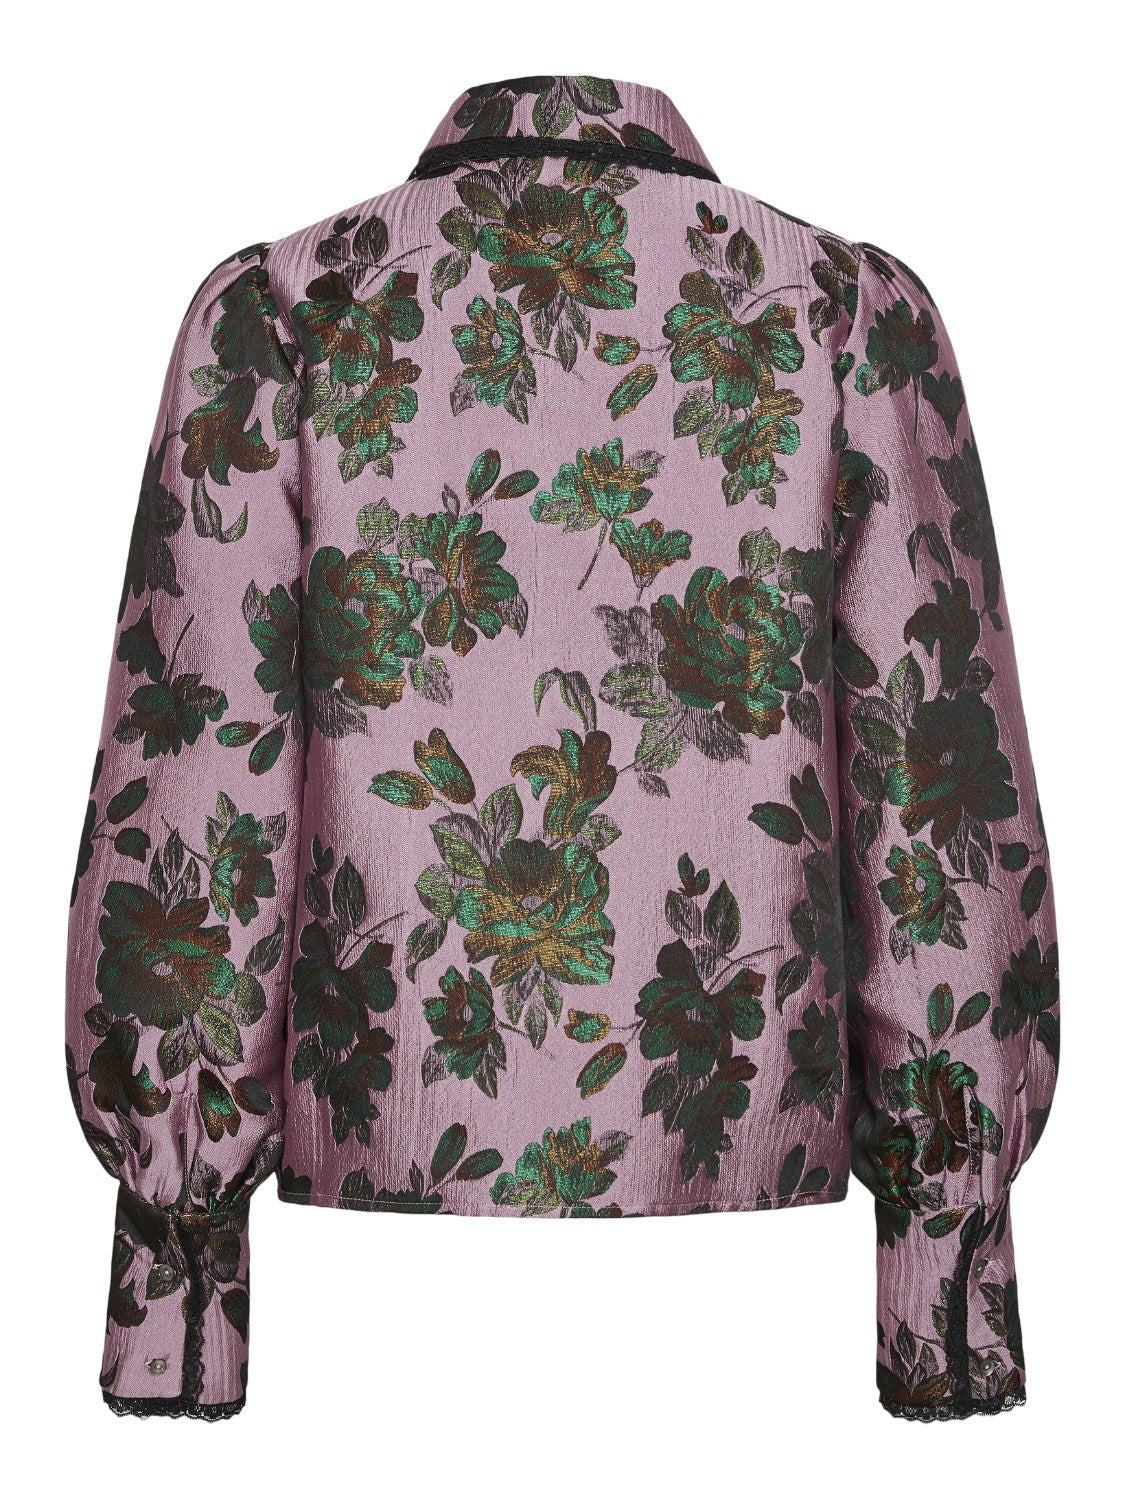 YASTINKA Jacquard floral blouse